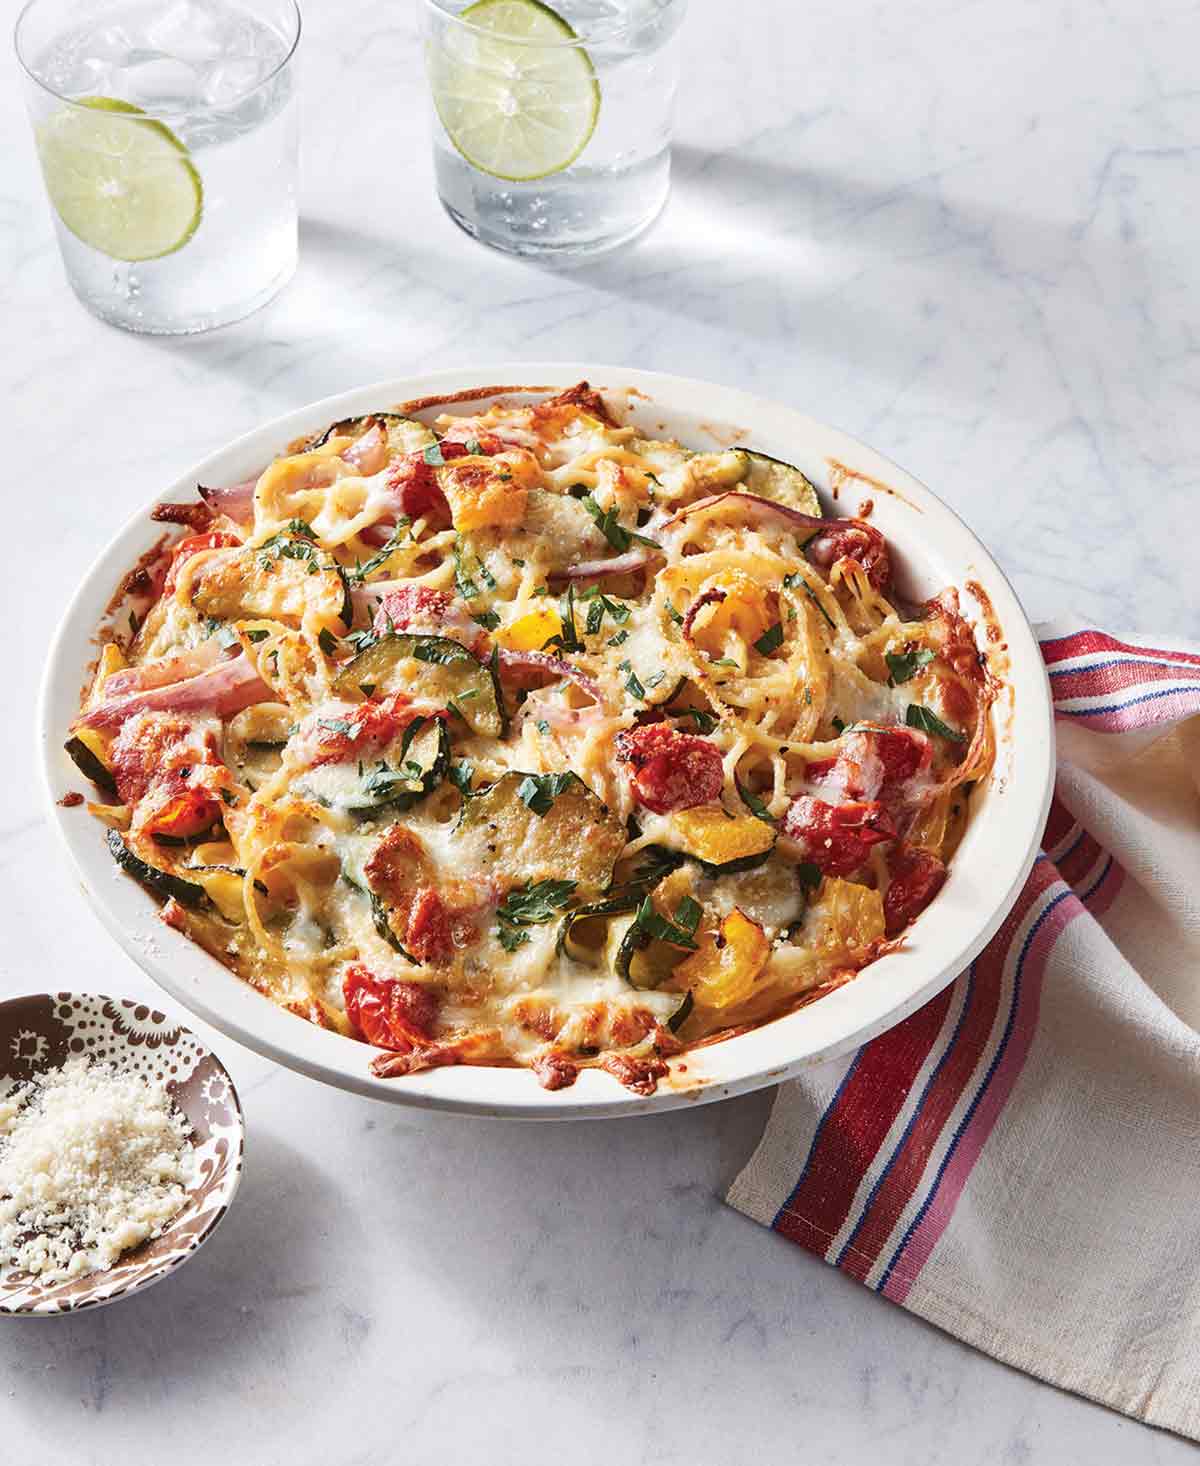 Spaghetti primavera pie in a large dish--spaghetti topped with zucchini, tomatoes, onions, Parmesan and mozzarella cheese.